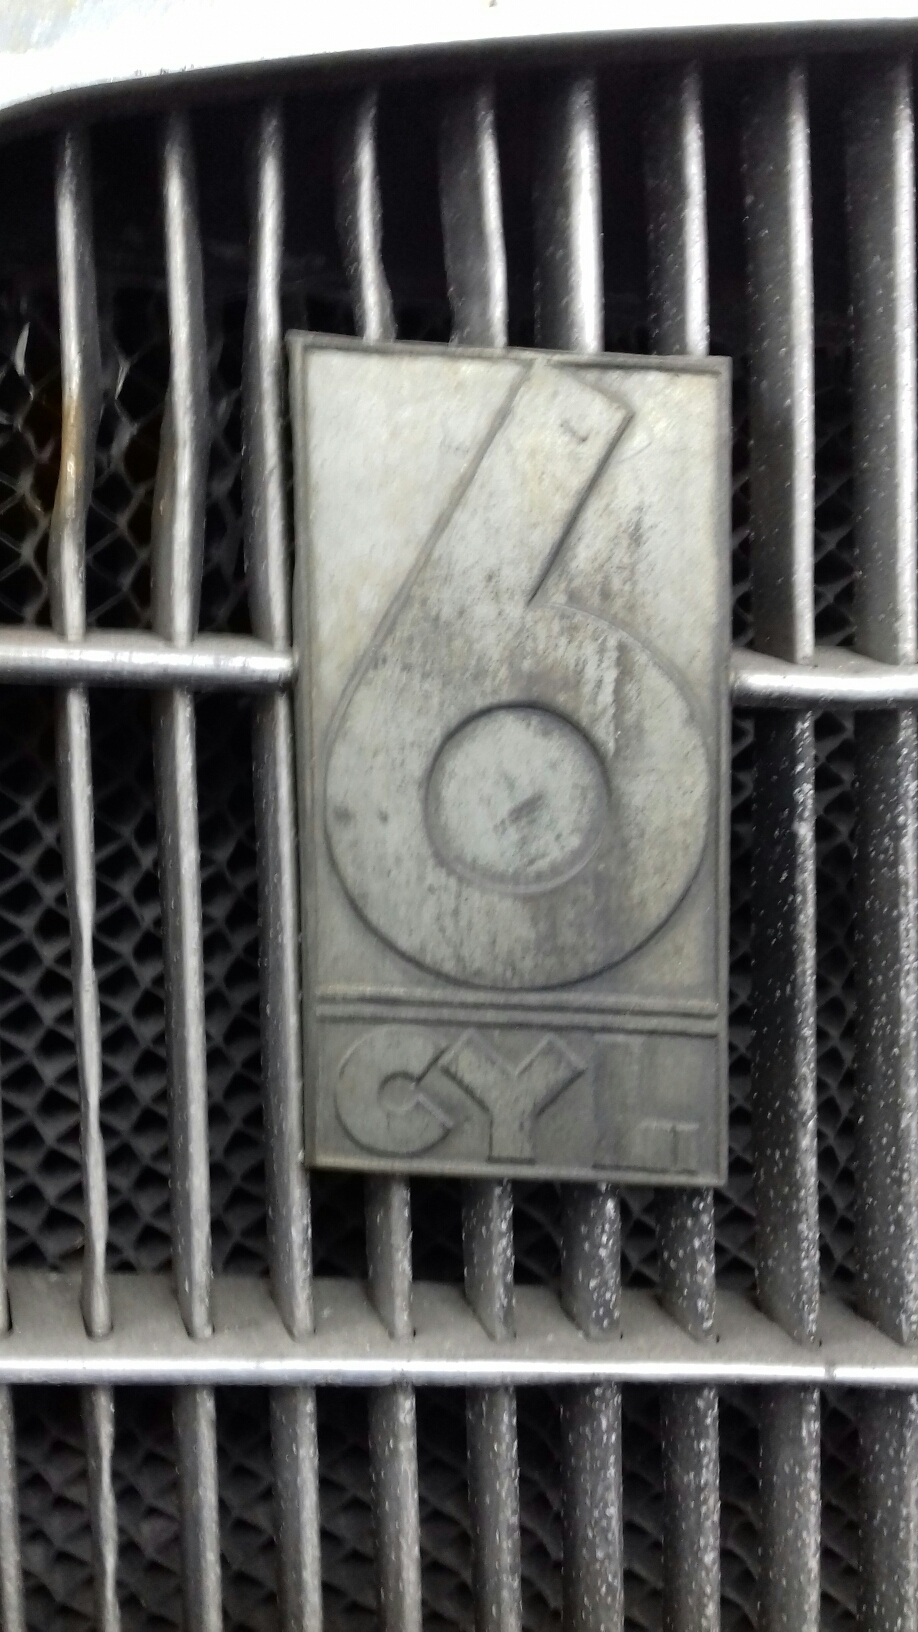 Das Orginal Typenschild der 6 Zylinder von Opel.